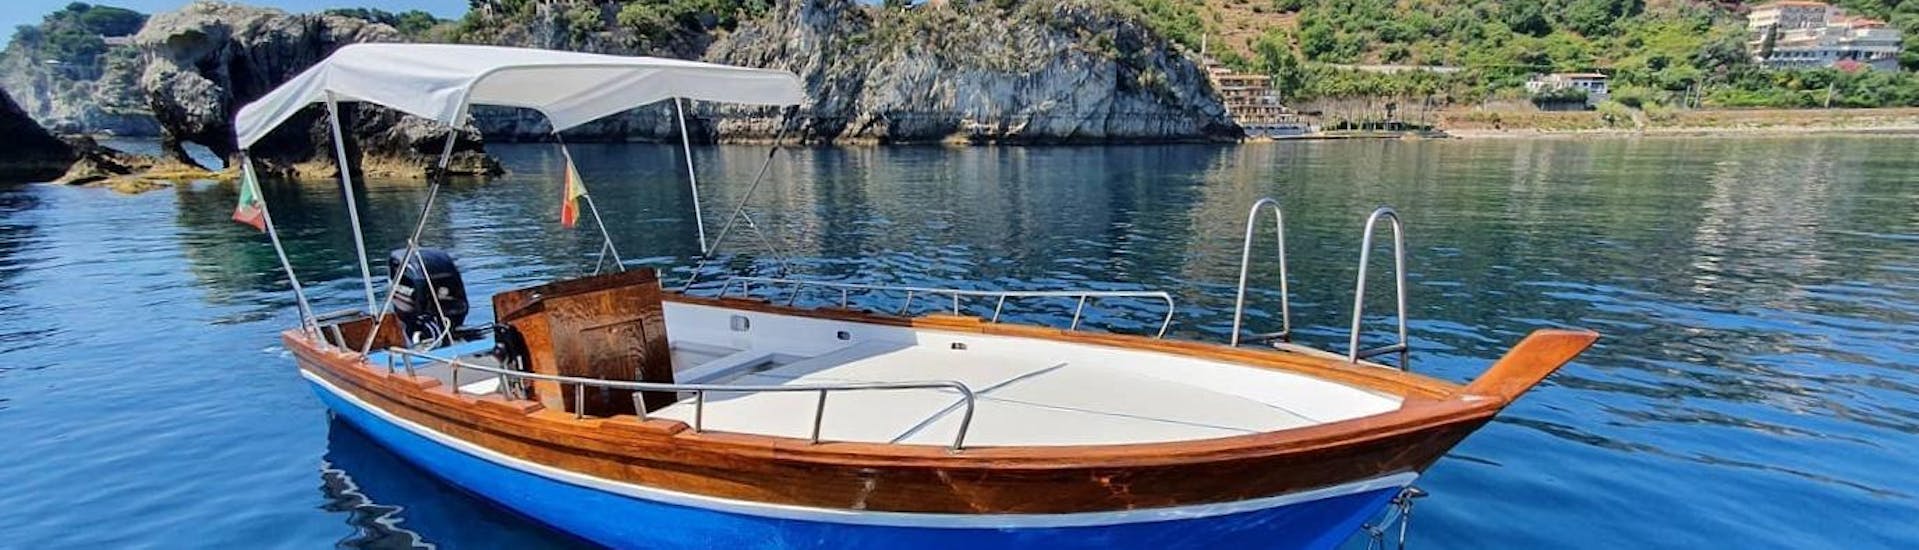 Barca in Legno Tradizionale usata per le gite in barca da Boat Experience Taormina.